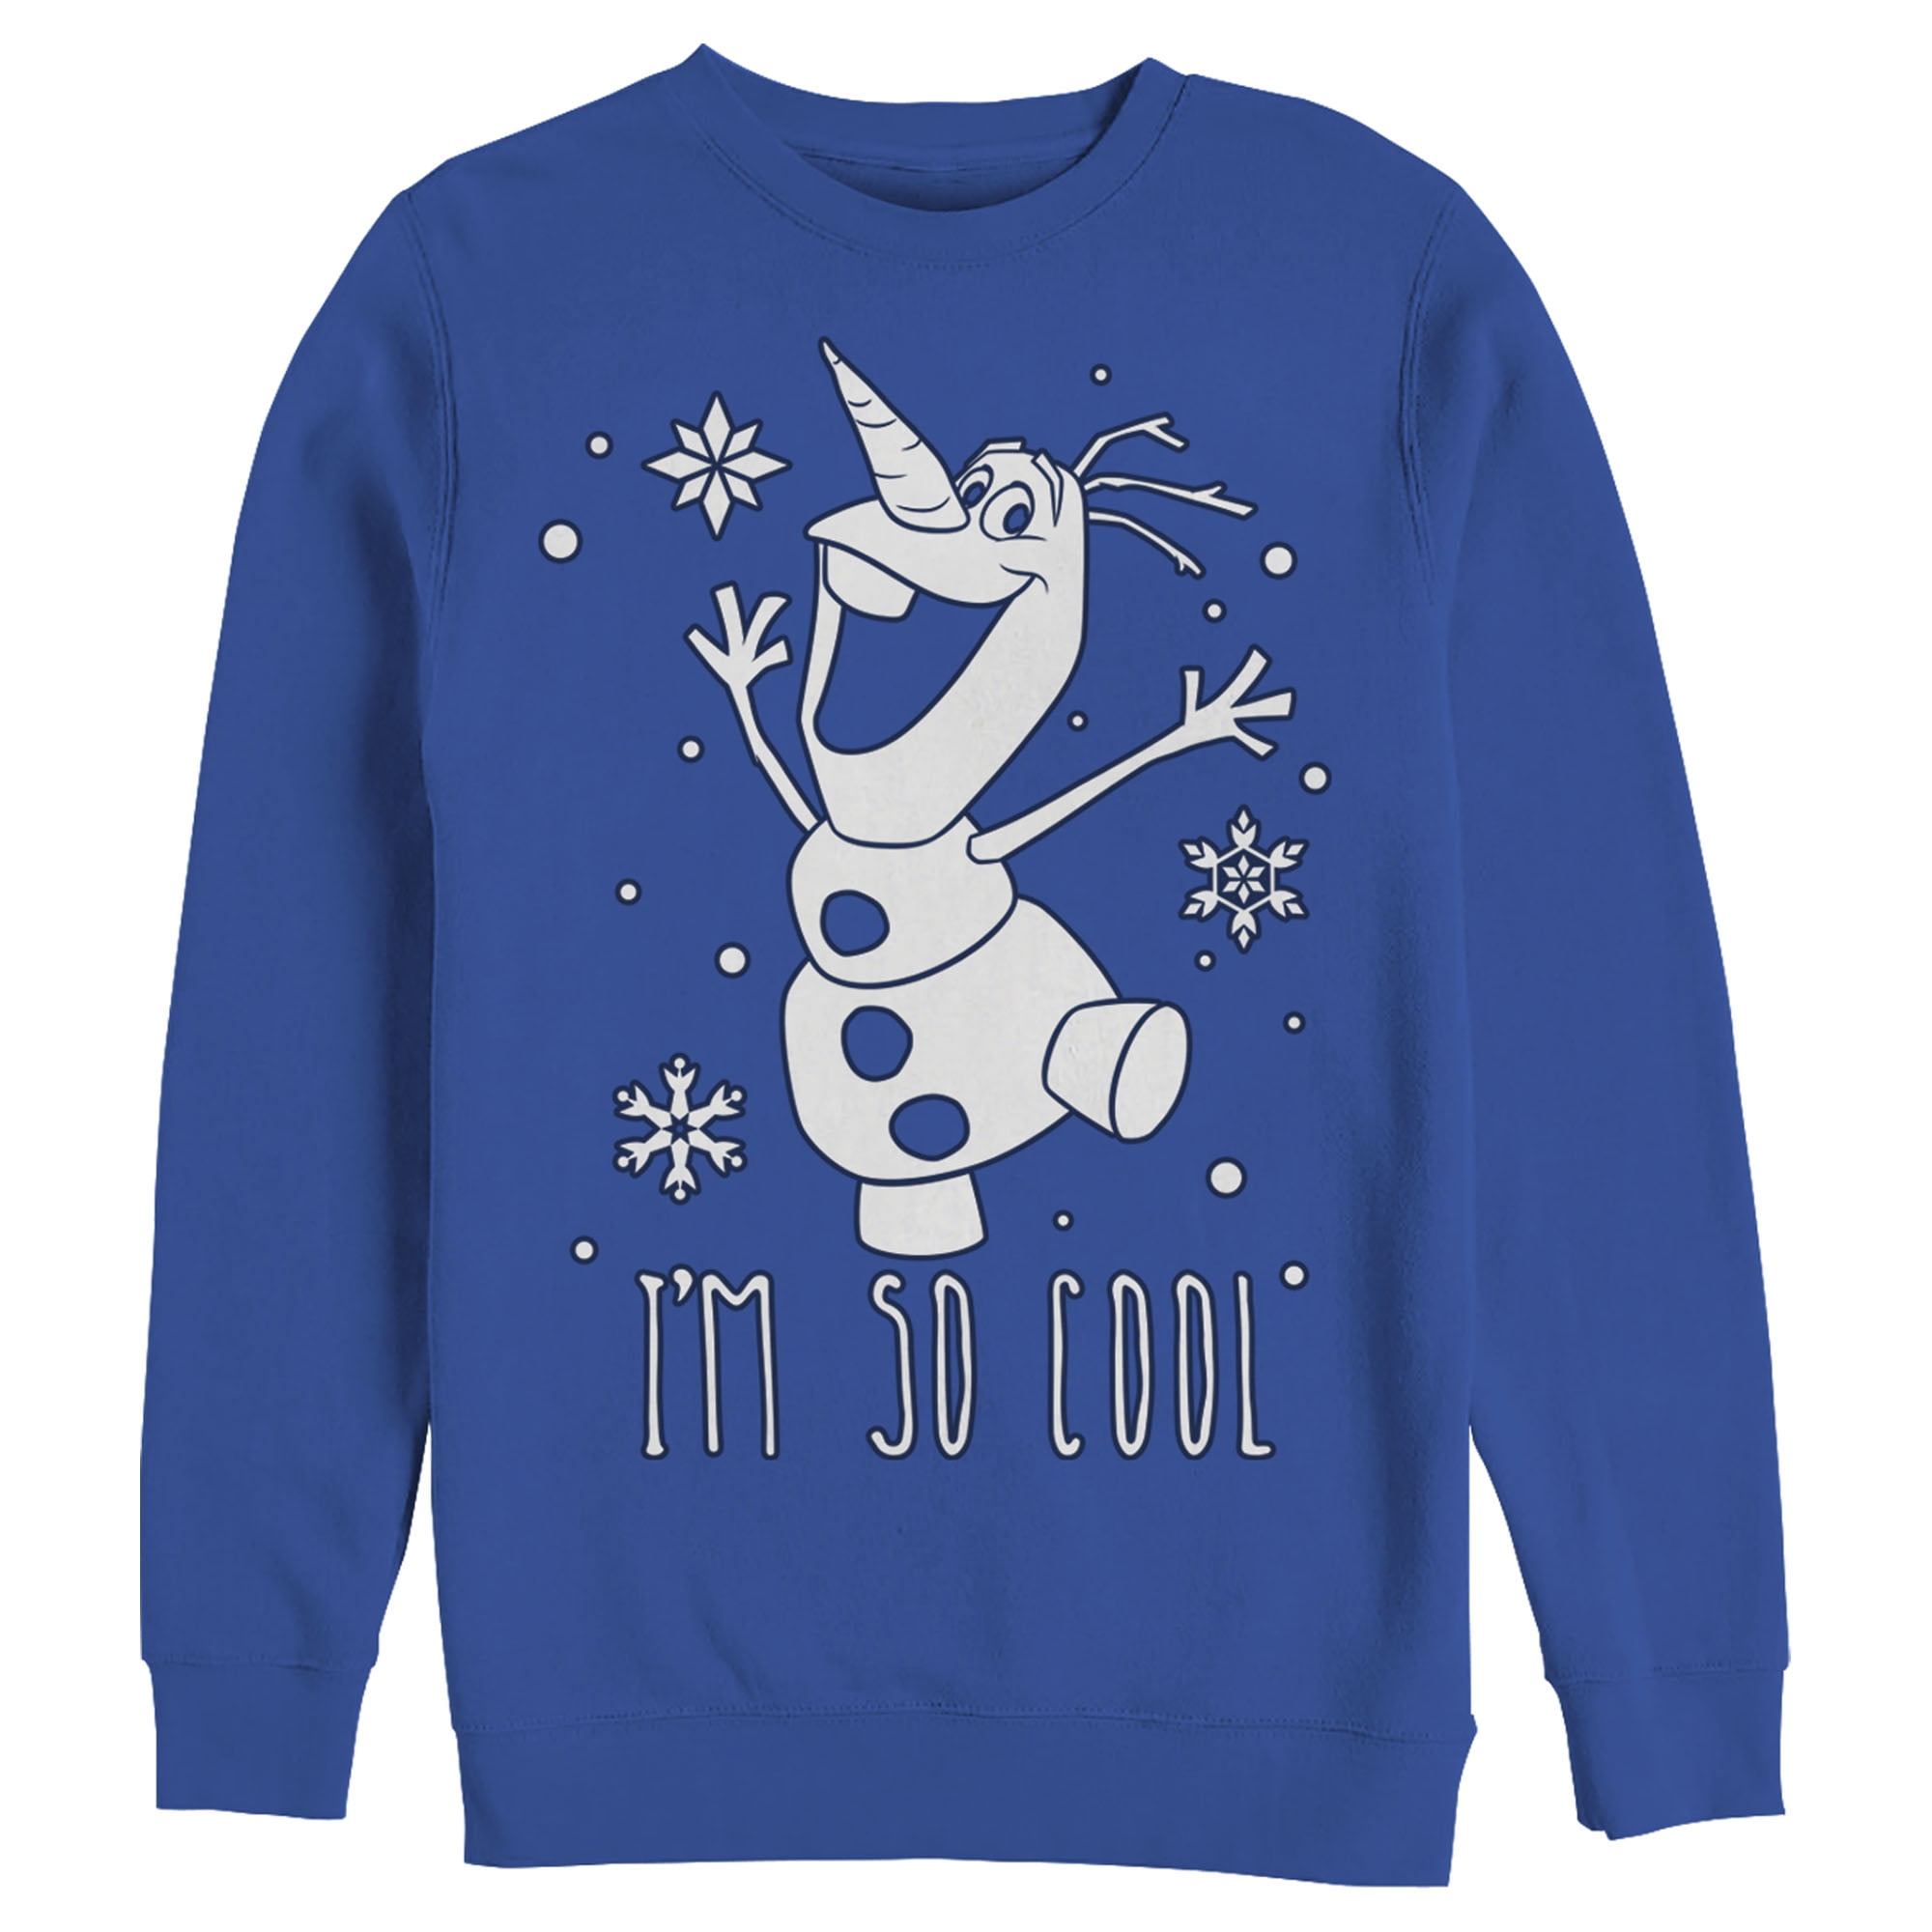 Onheil draad Toeschouwer Men's Frozen Olaf So Cool Sweatshirt Navy Blue Large - Walmart.com